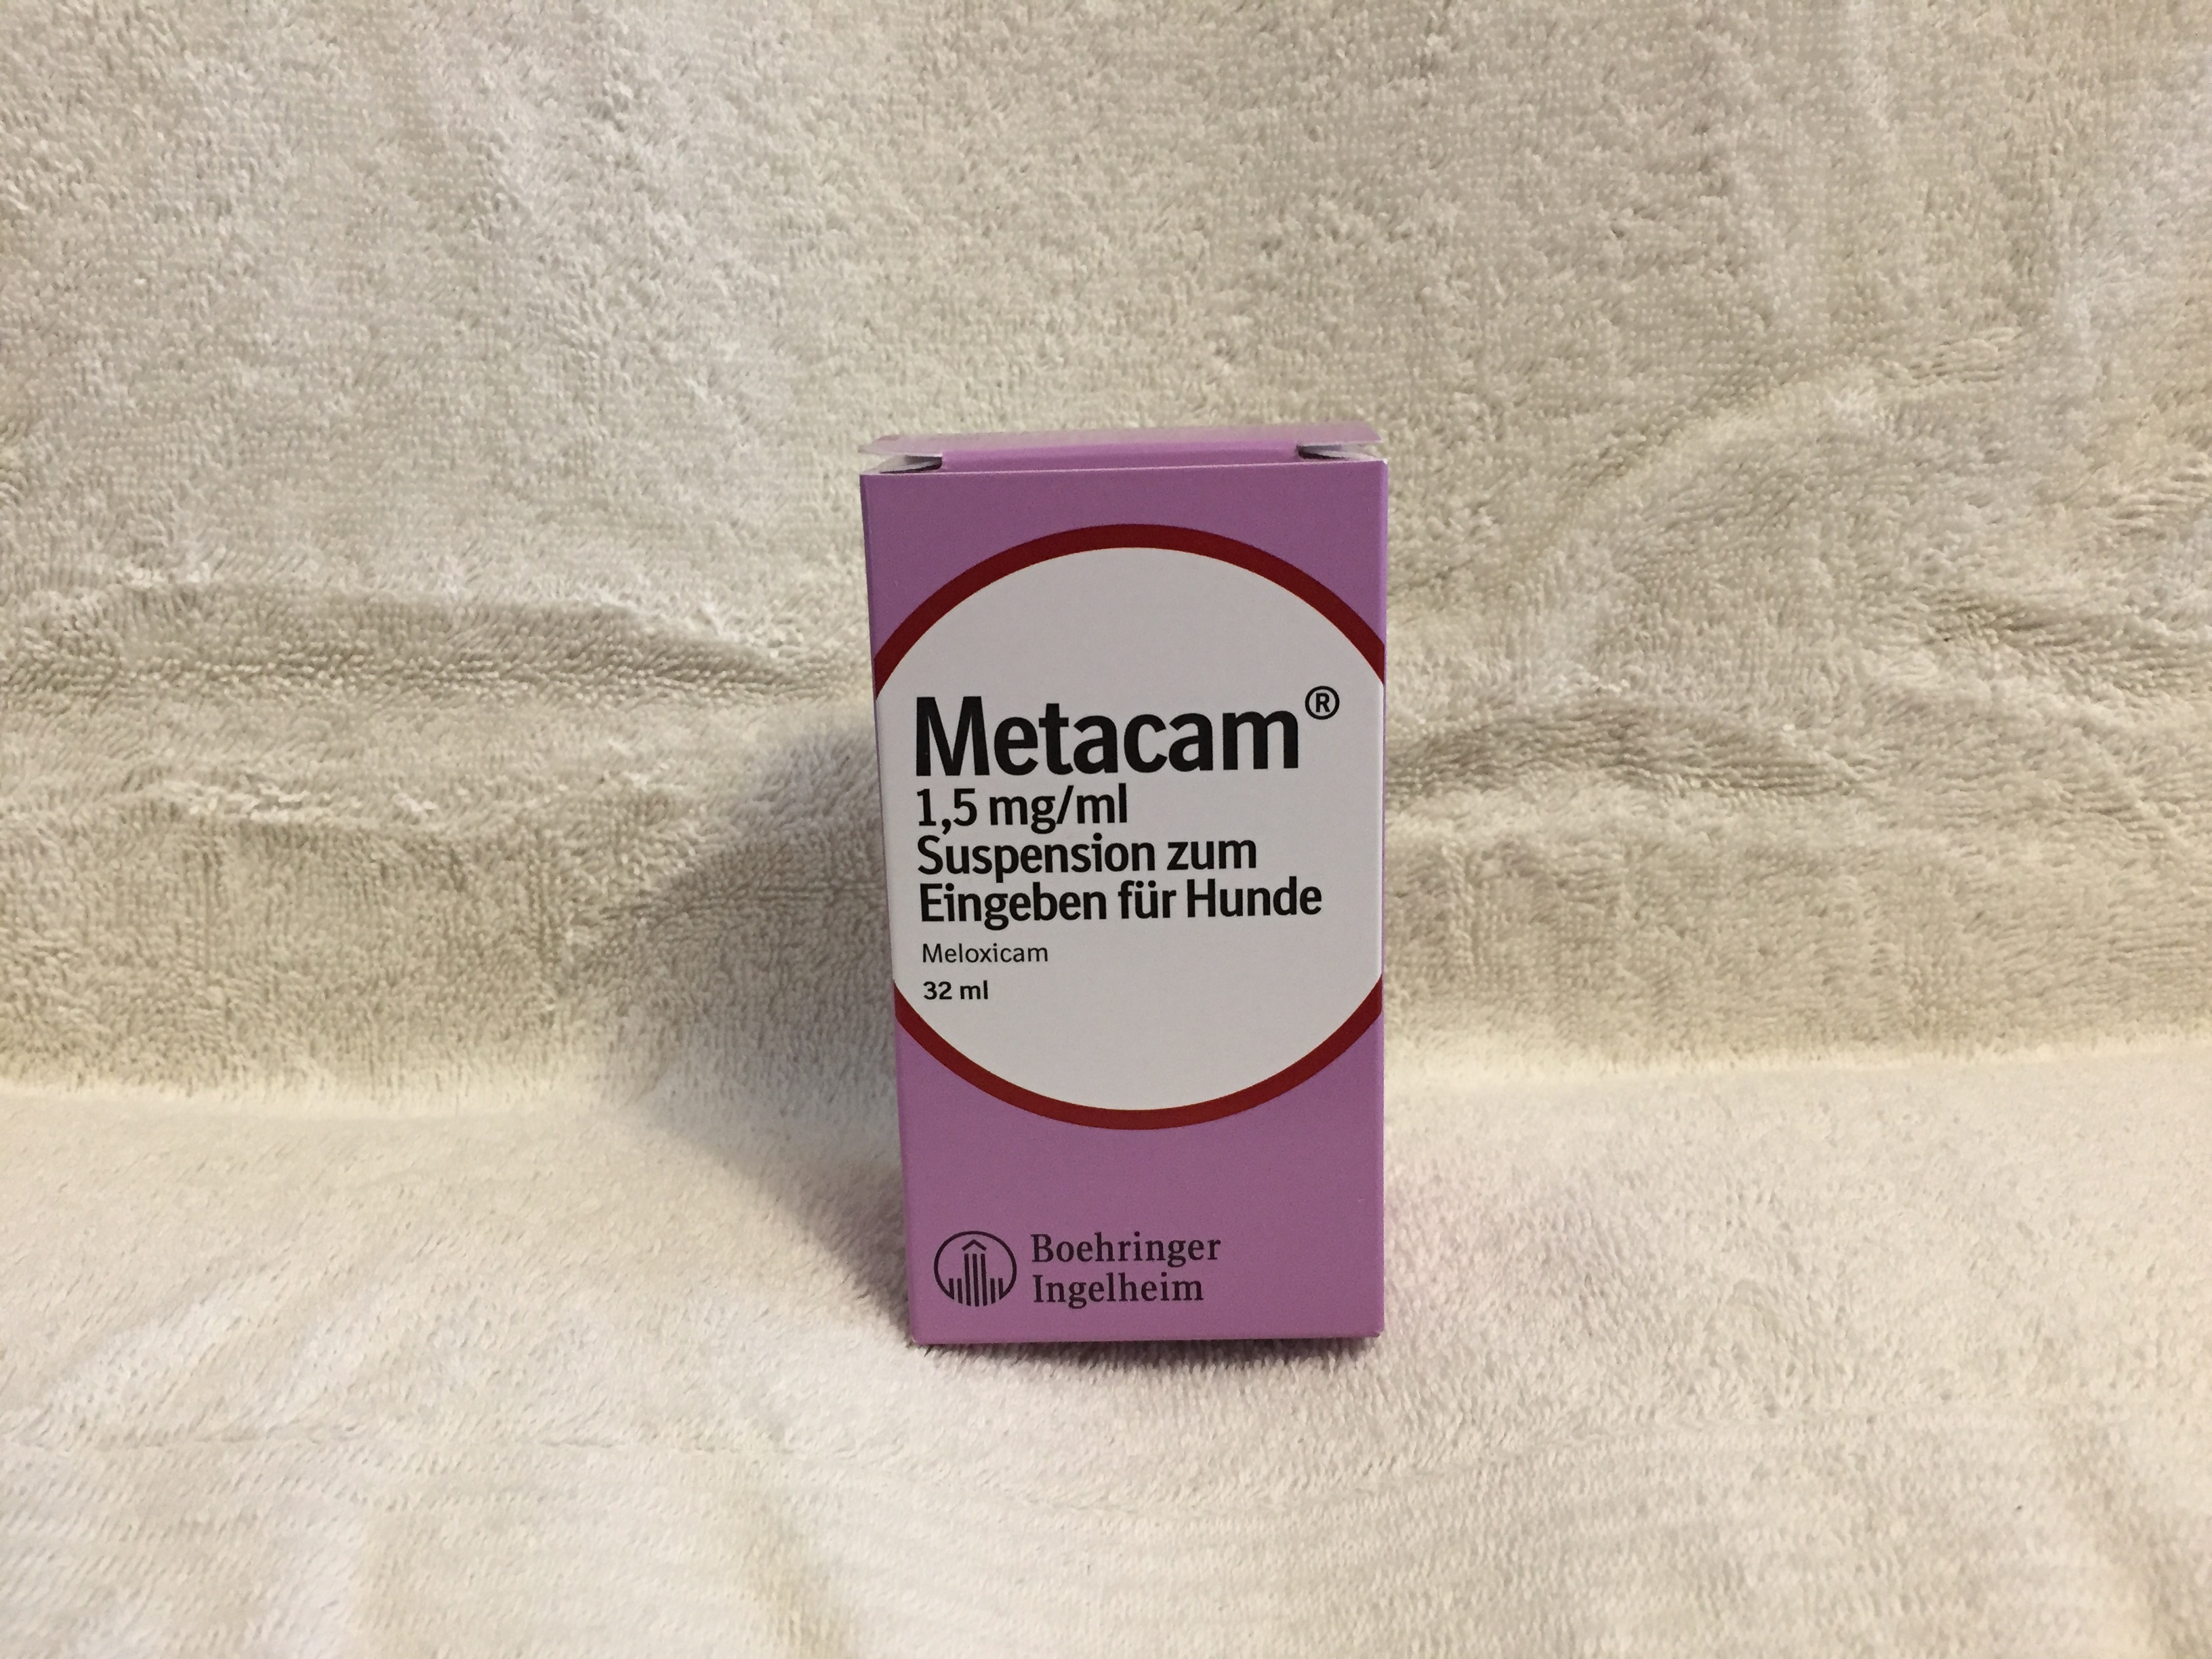 Metacam 1,5 mg/ml Suspension zum Eingeben für Hunde Möhren sind orange